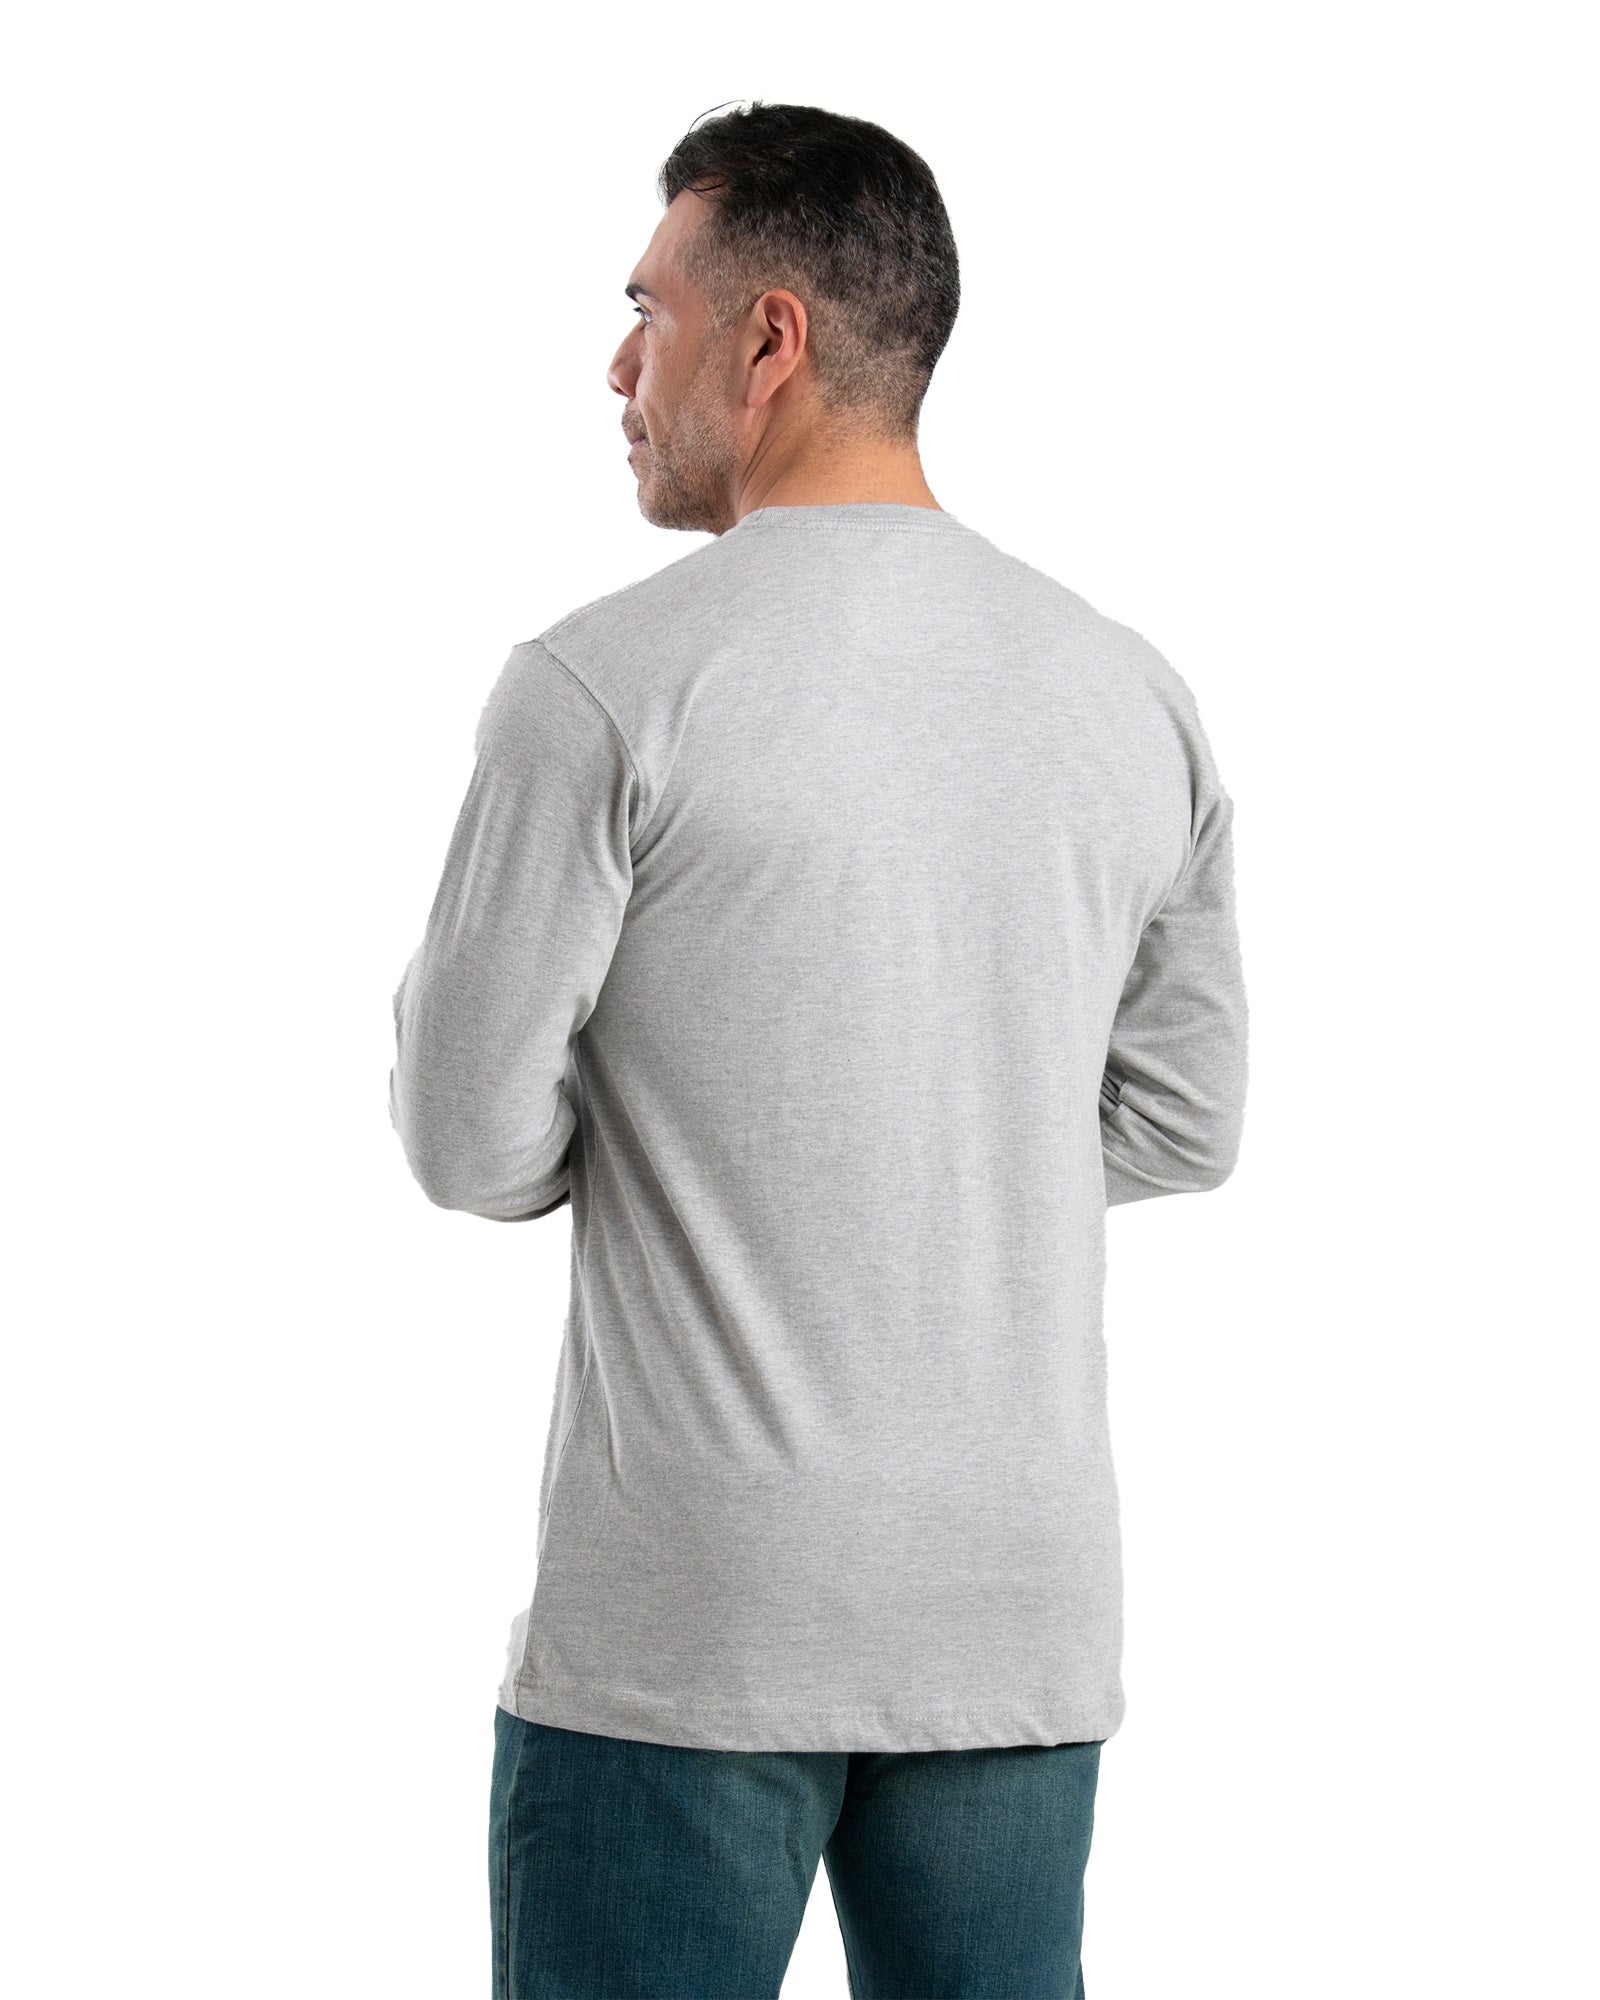 BSM46GY Heavyweight Long Sleeve Pocket T-Shirt